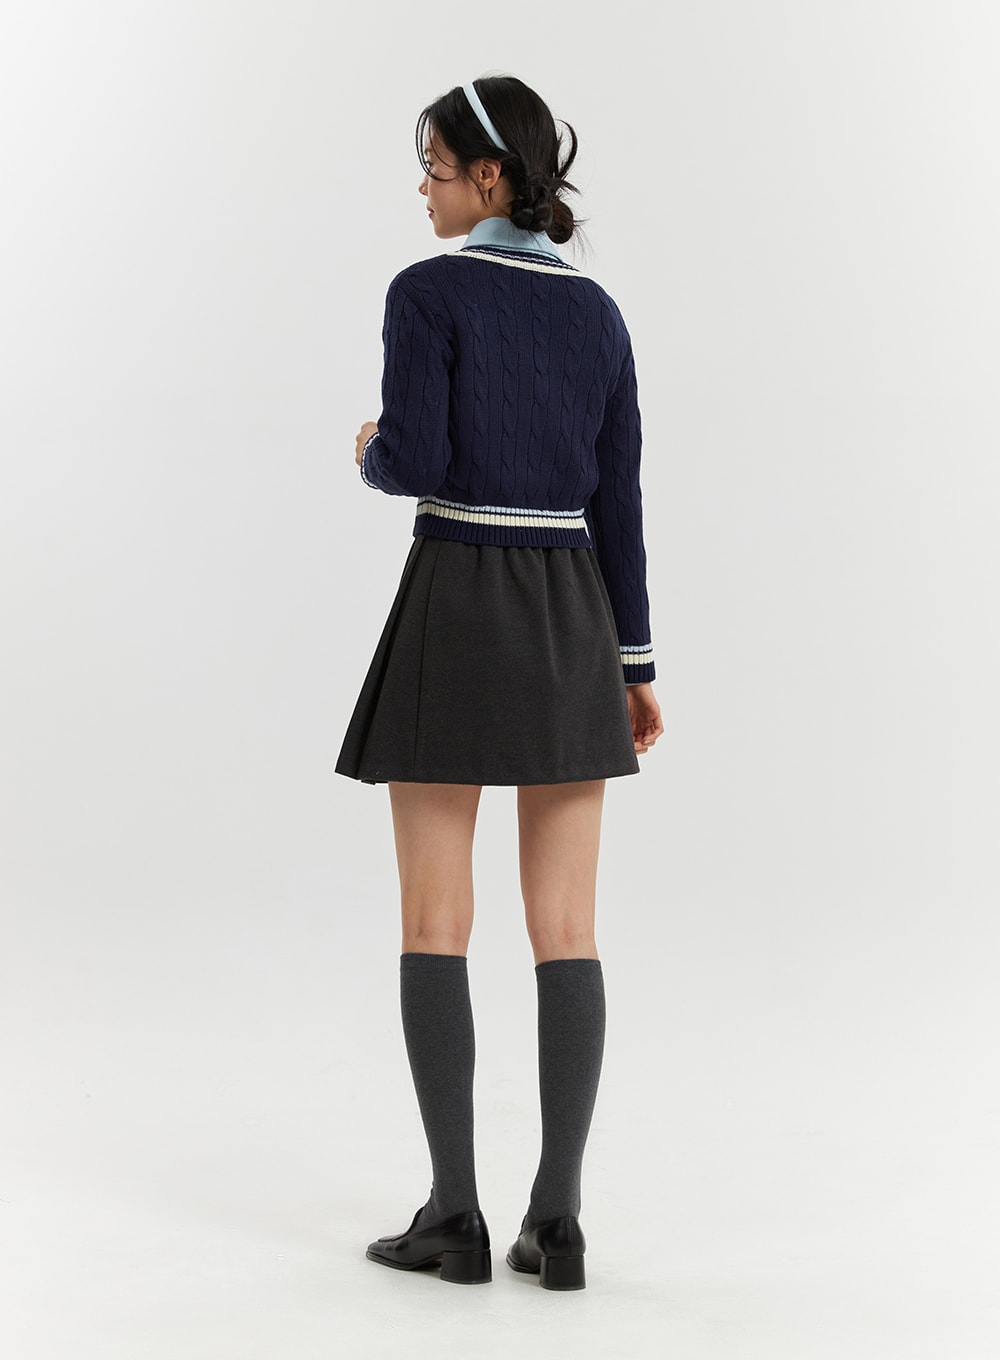 v-neck-cable-knit-sweater-od321